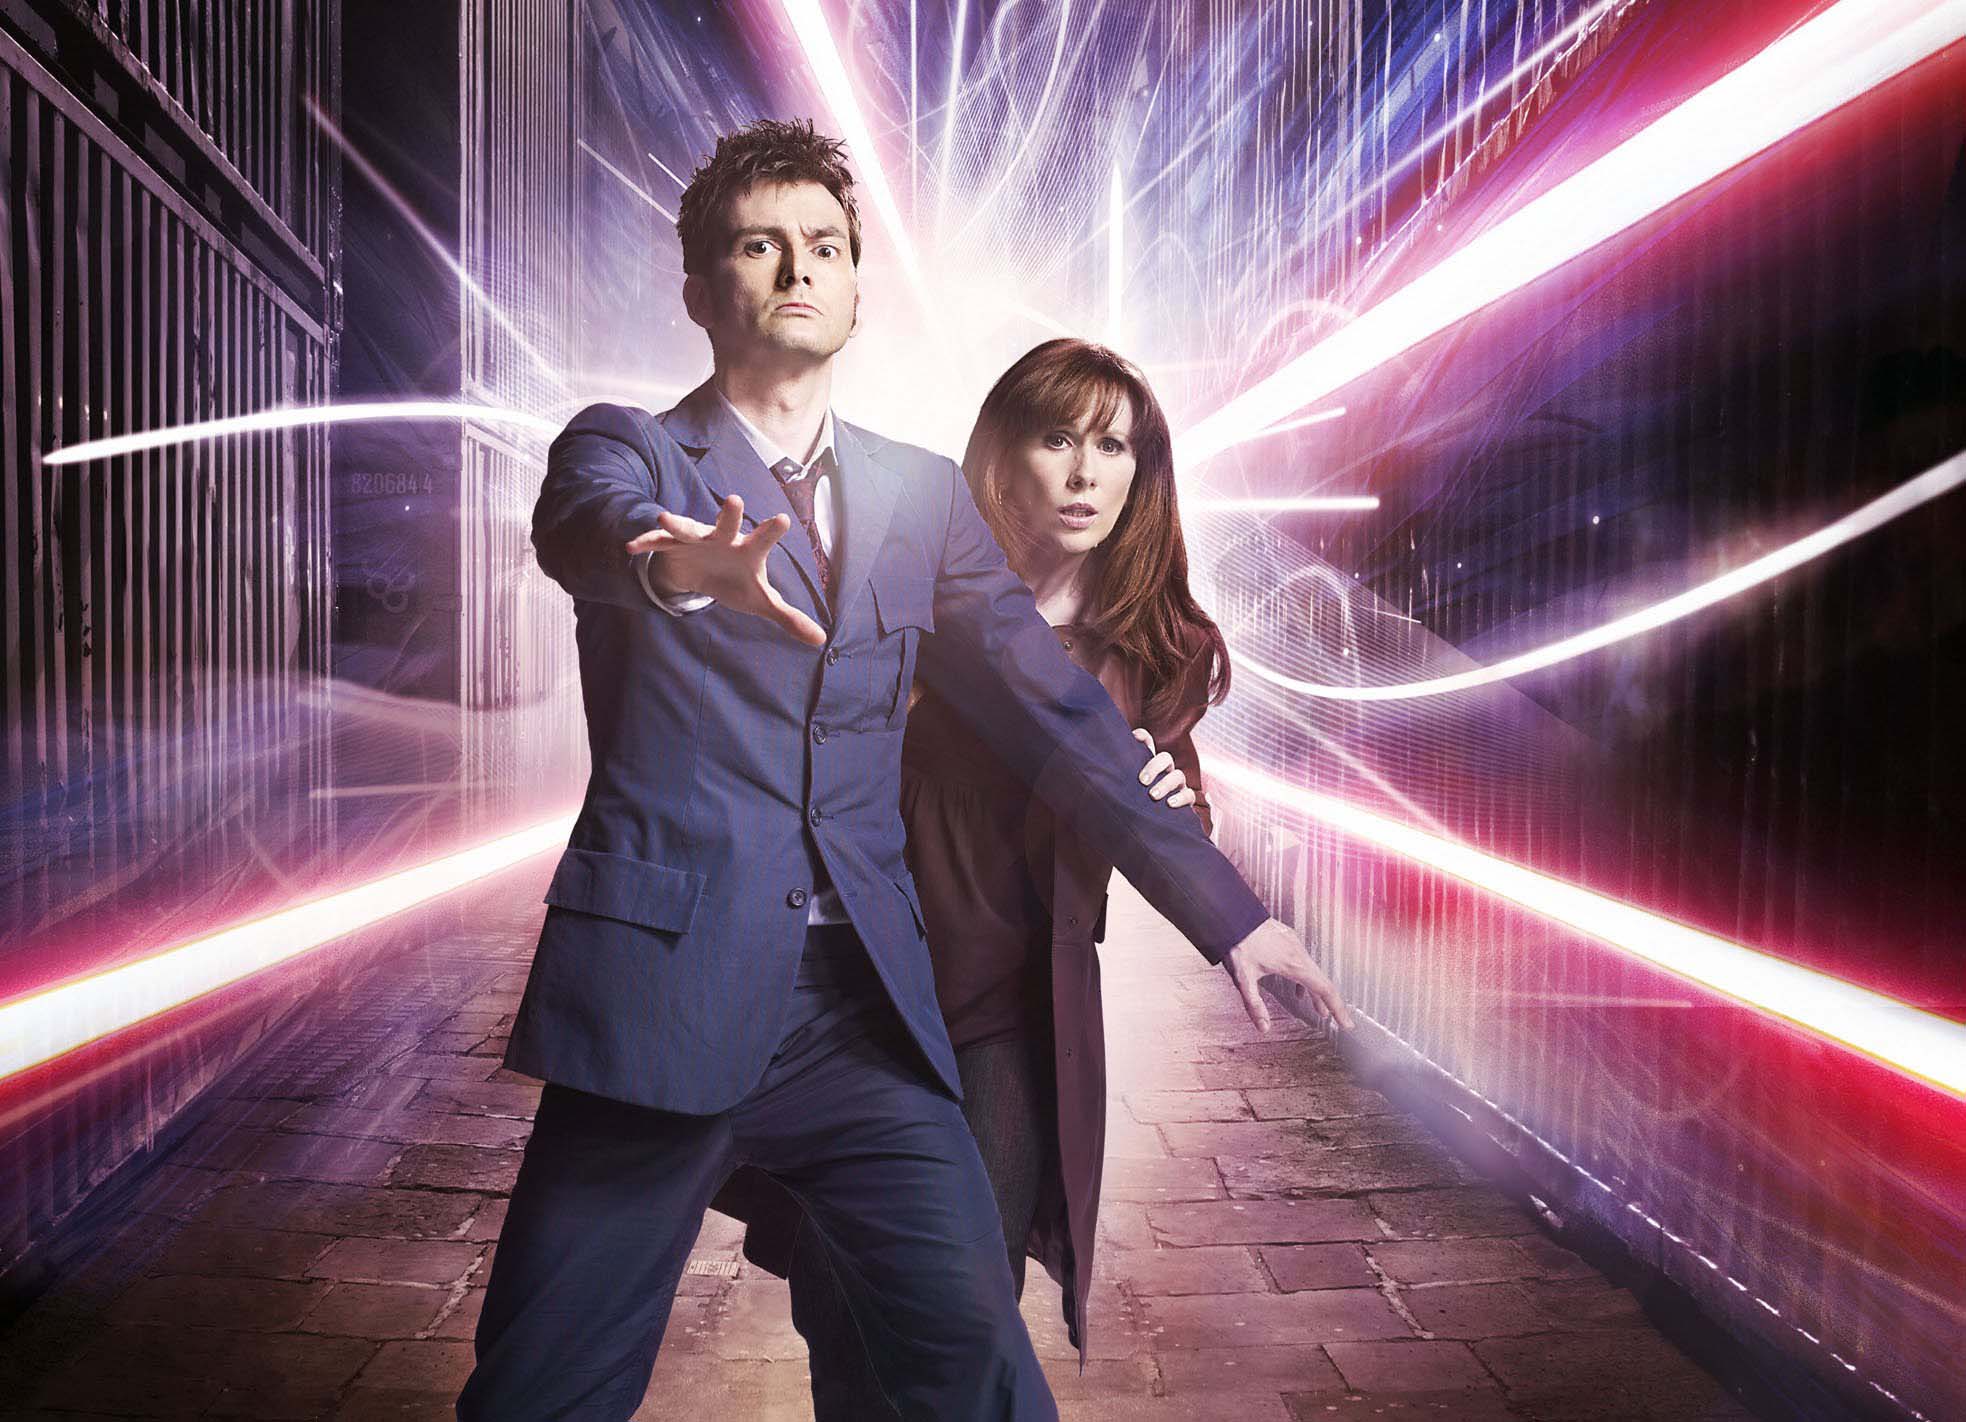 Téléchargez gratuitement l'image Doctor Who, Séries Tv sur le bureau de votre PC